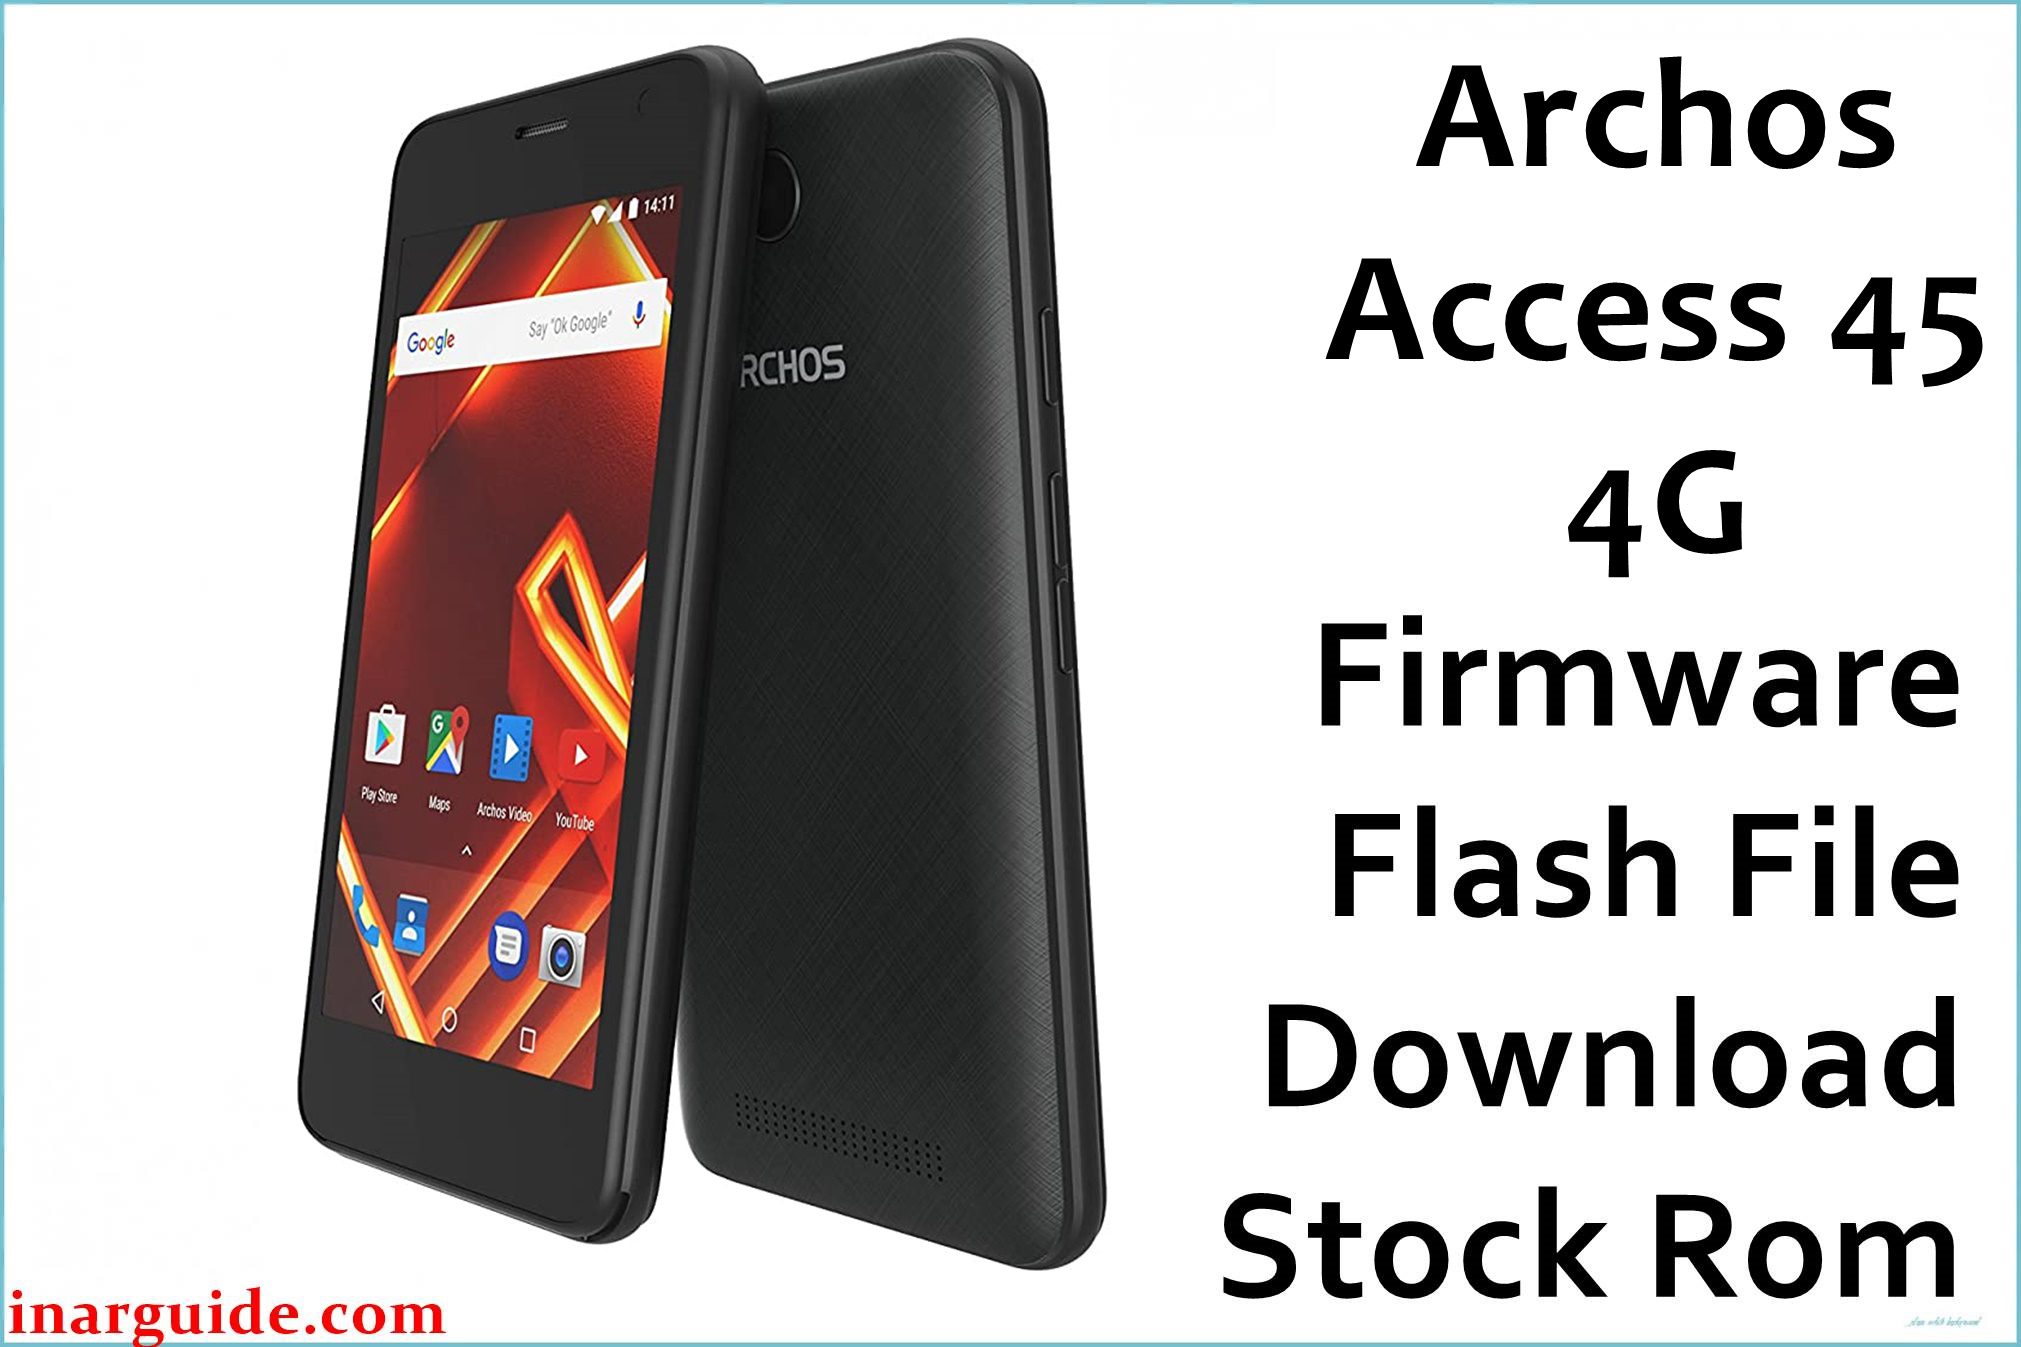 Archos Access 45 4G